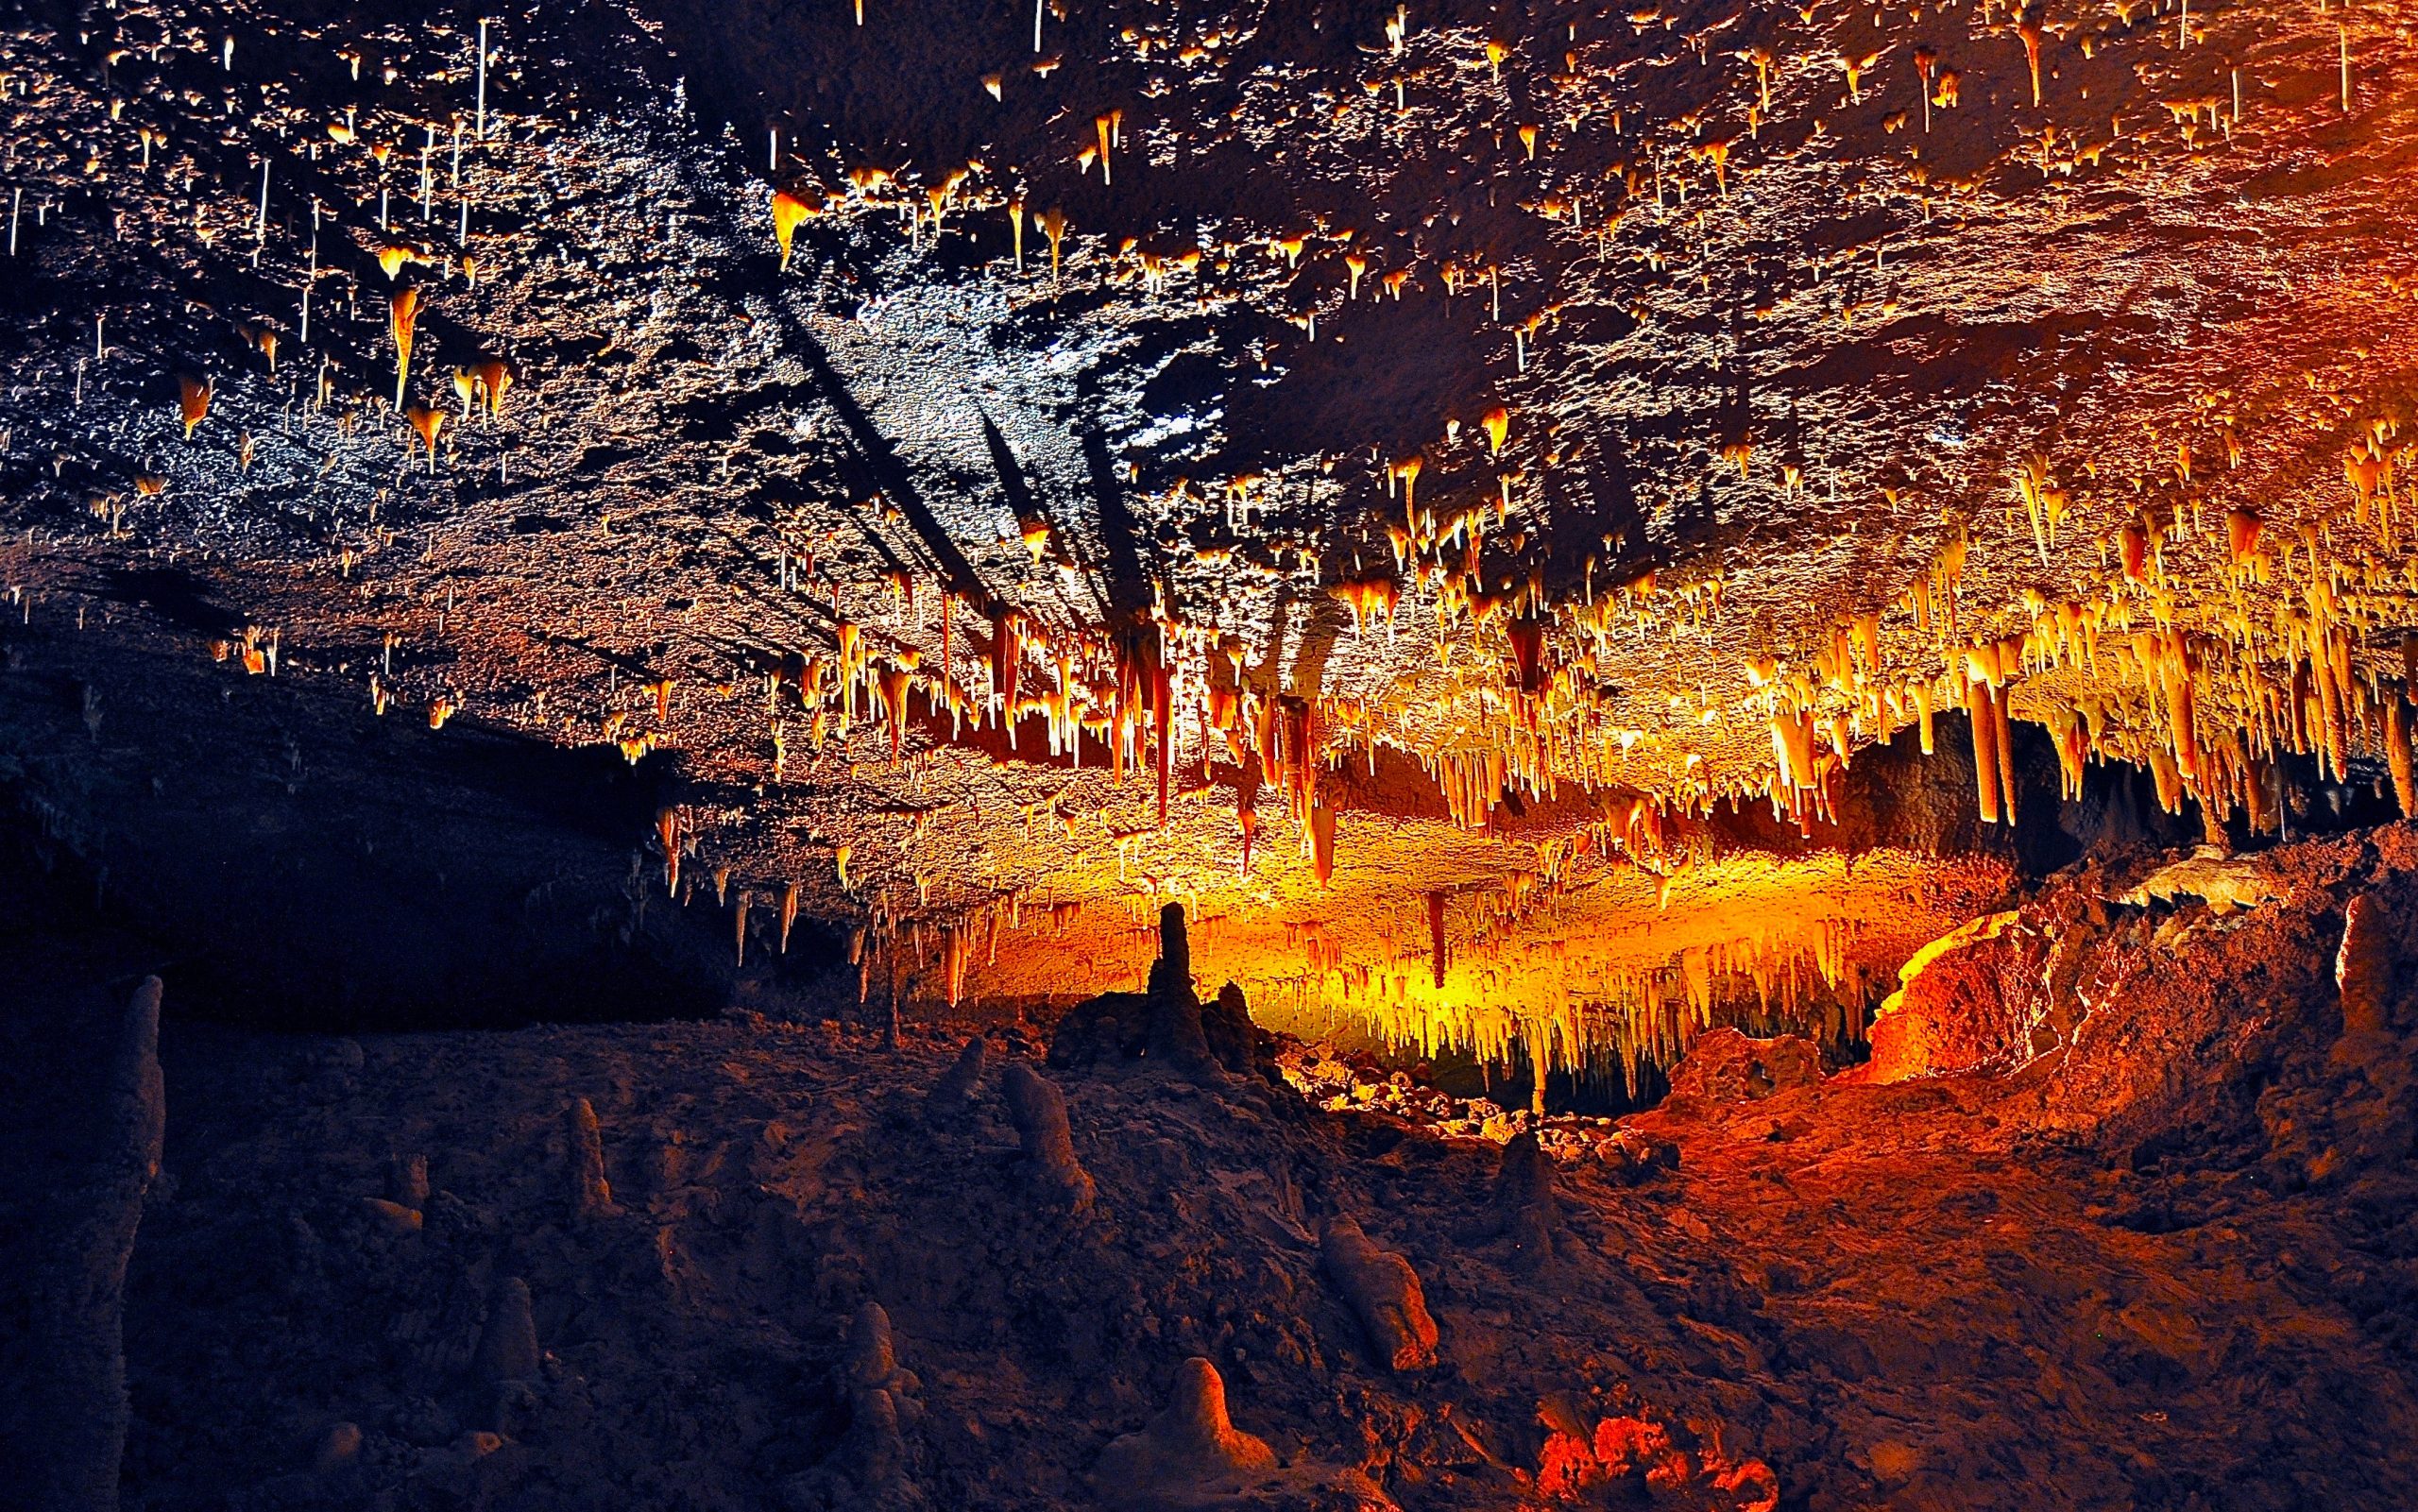 Grotte di Castellana: Ecco come arrivarci e cosa ti aspetta